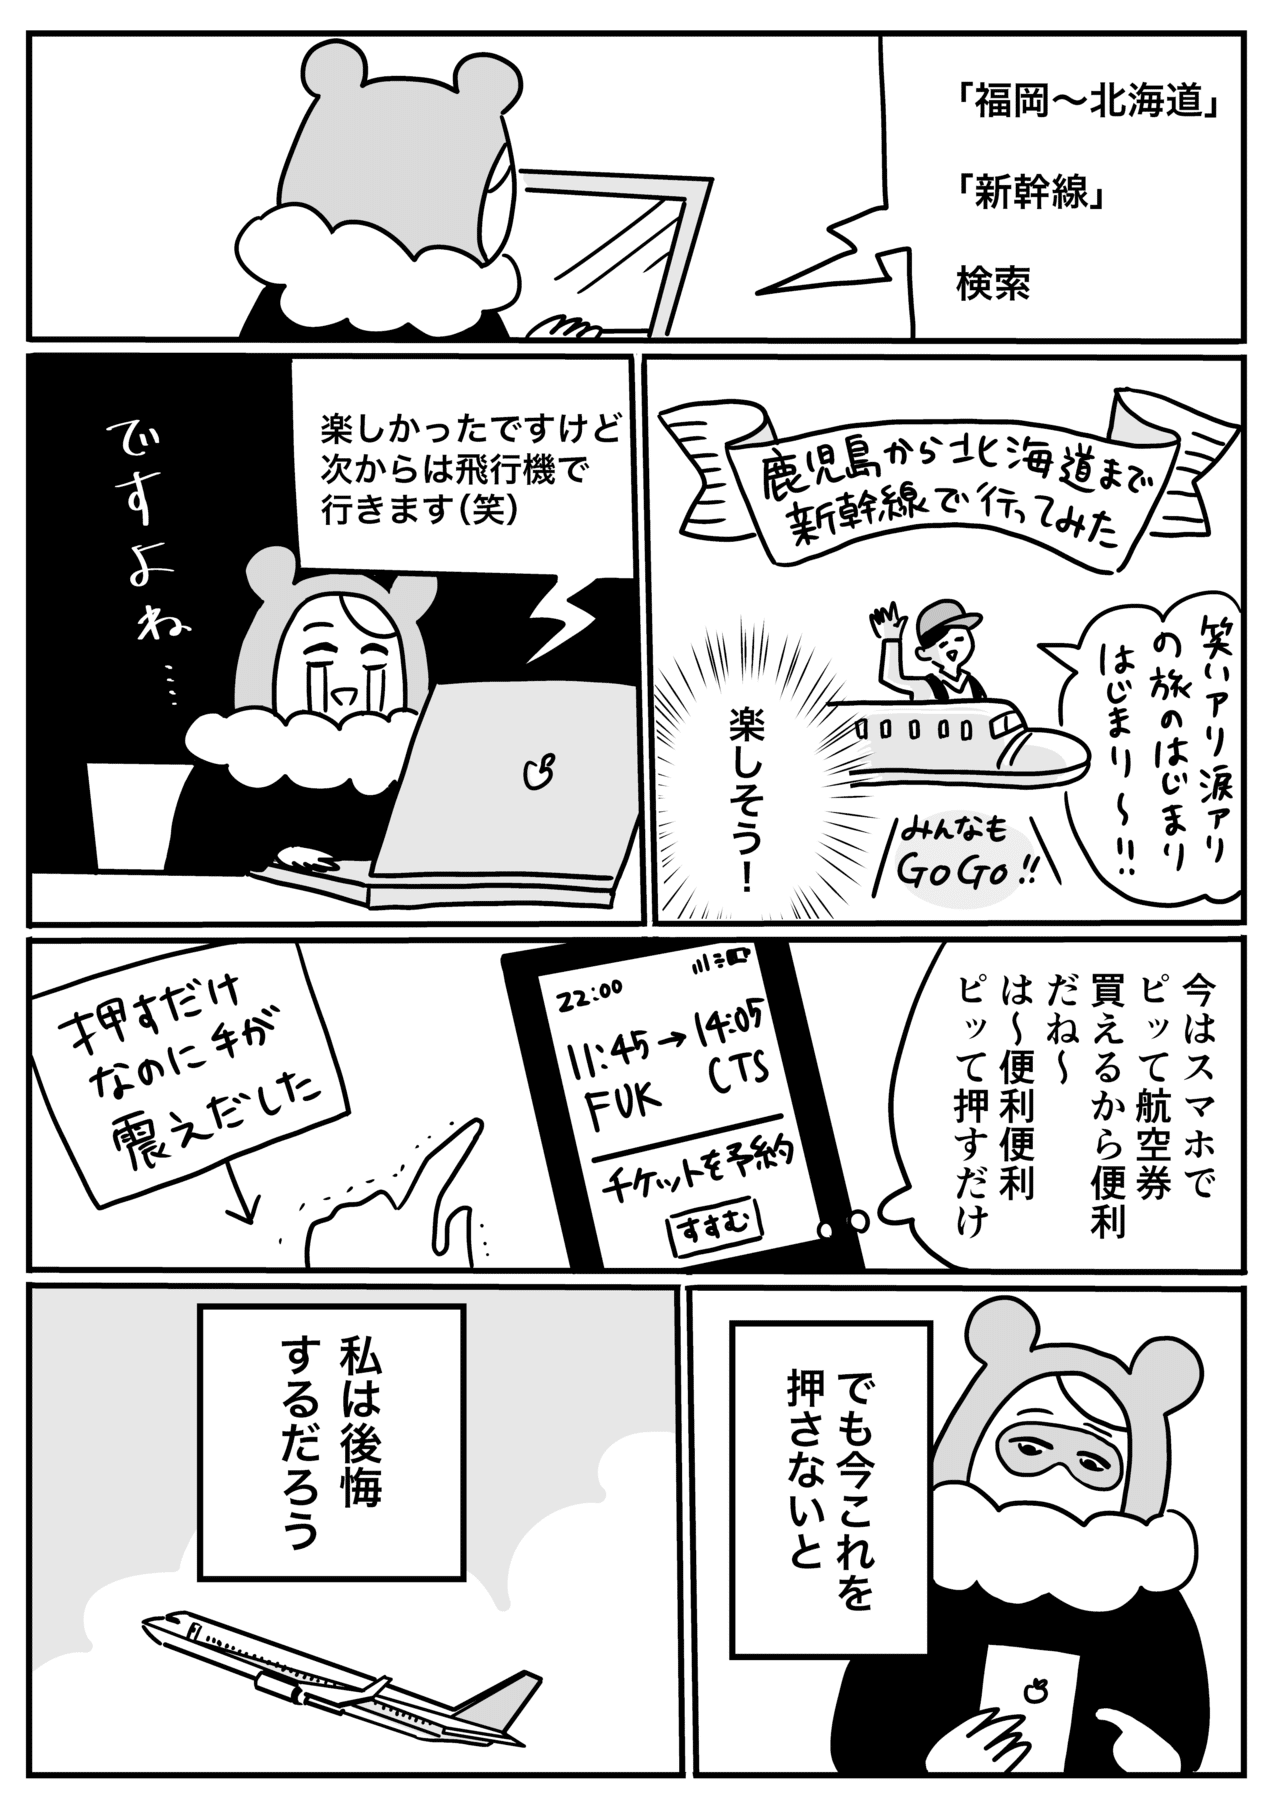 コミック3_004